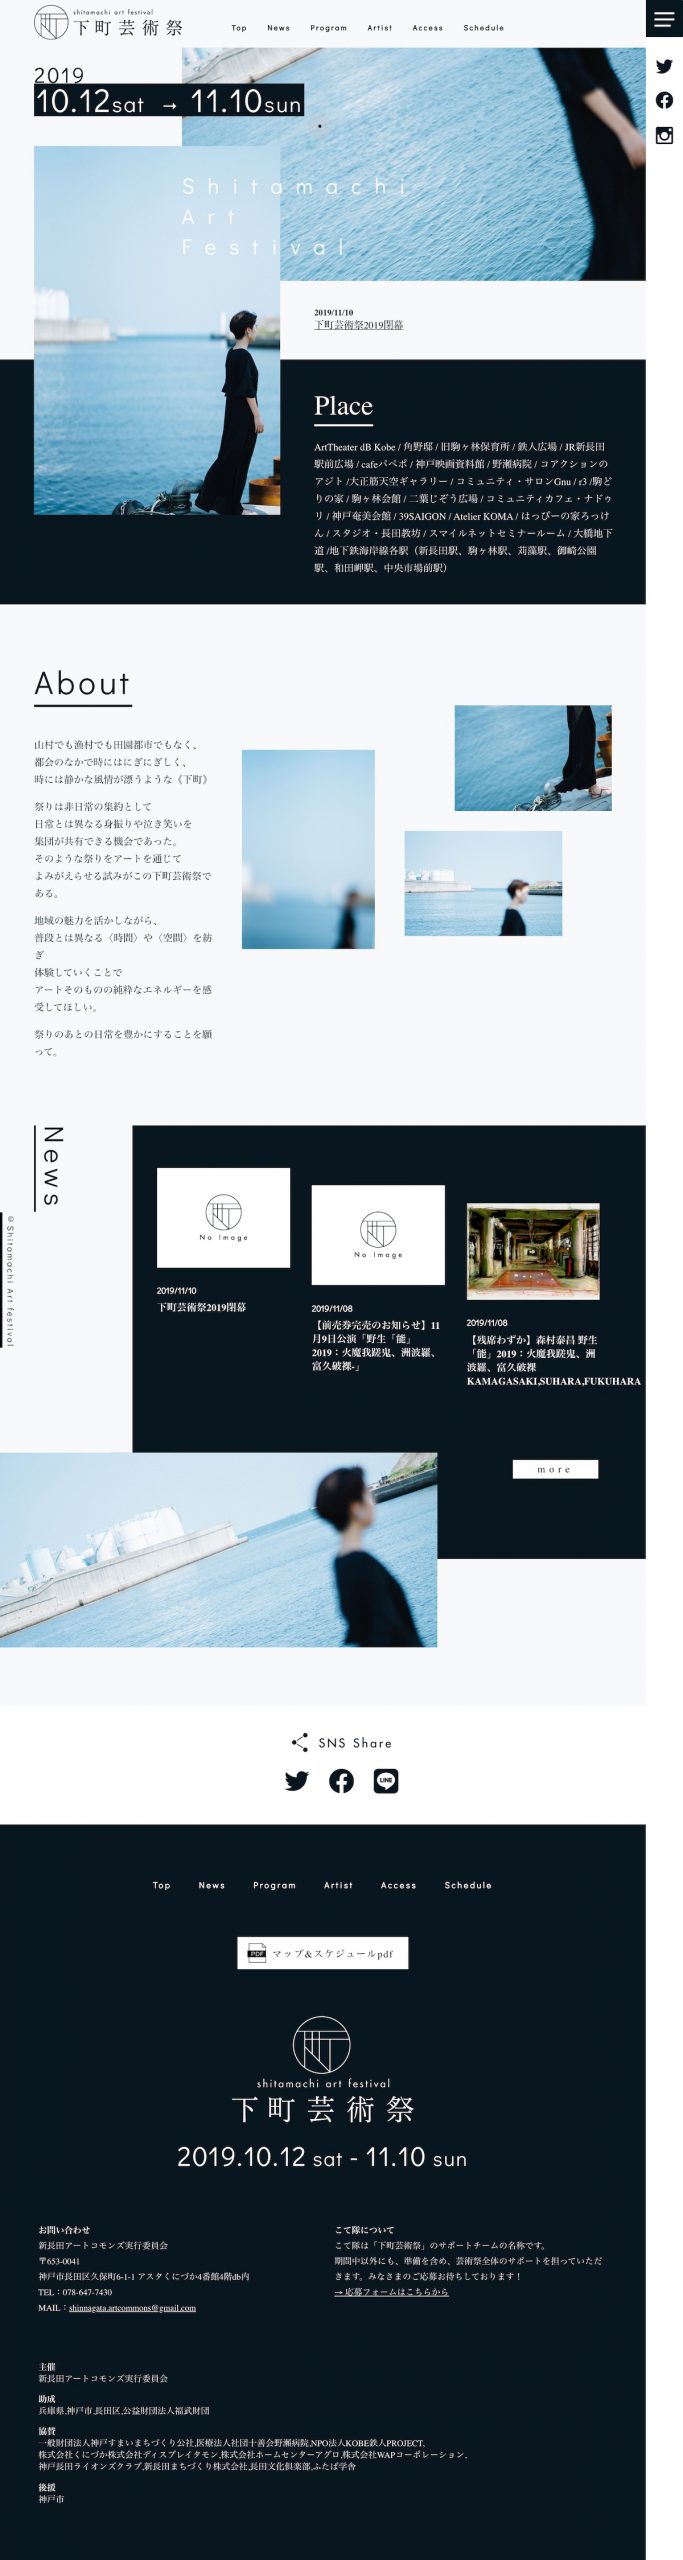 アート・文化・音楽 ホームページ制作 WEBデザイン参考ギャラリー 下町芸術祭 Shitamachi Art Festival 2019